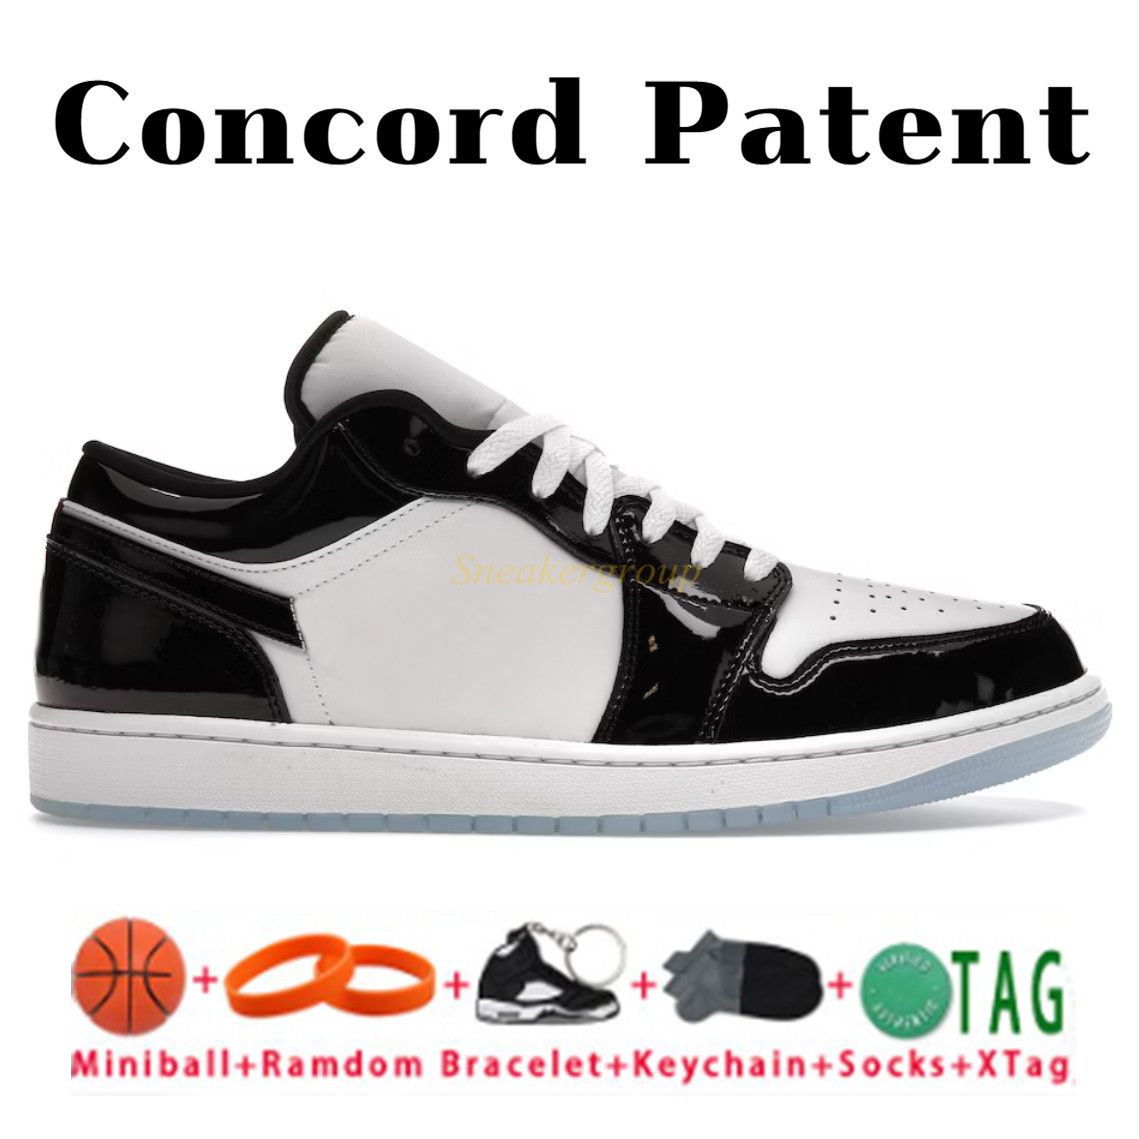 6.SE Concord Patent